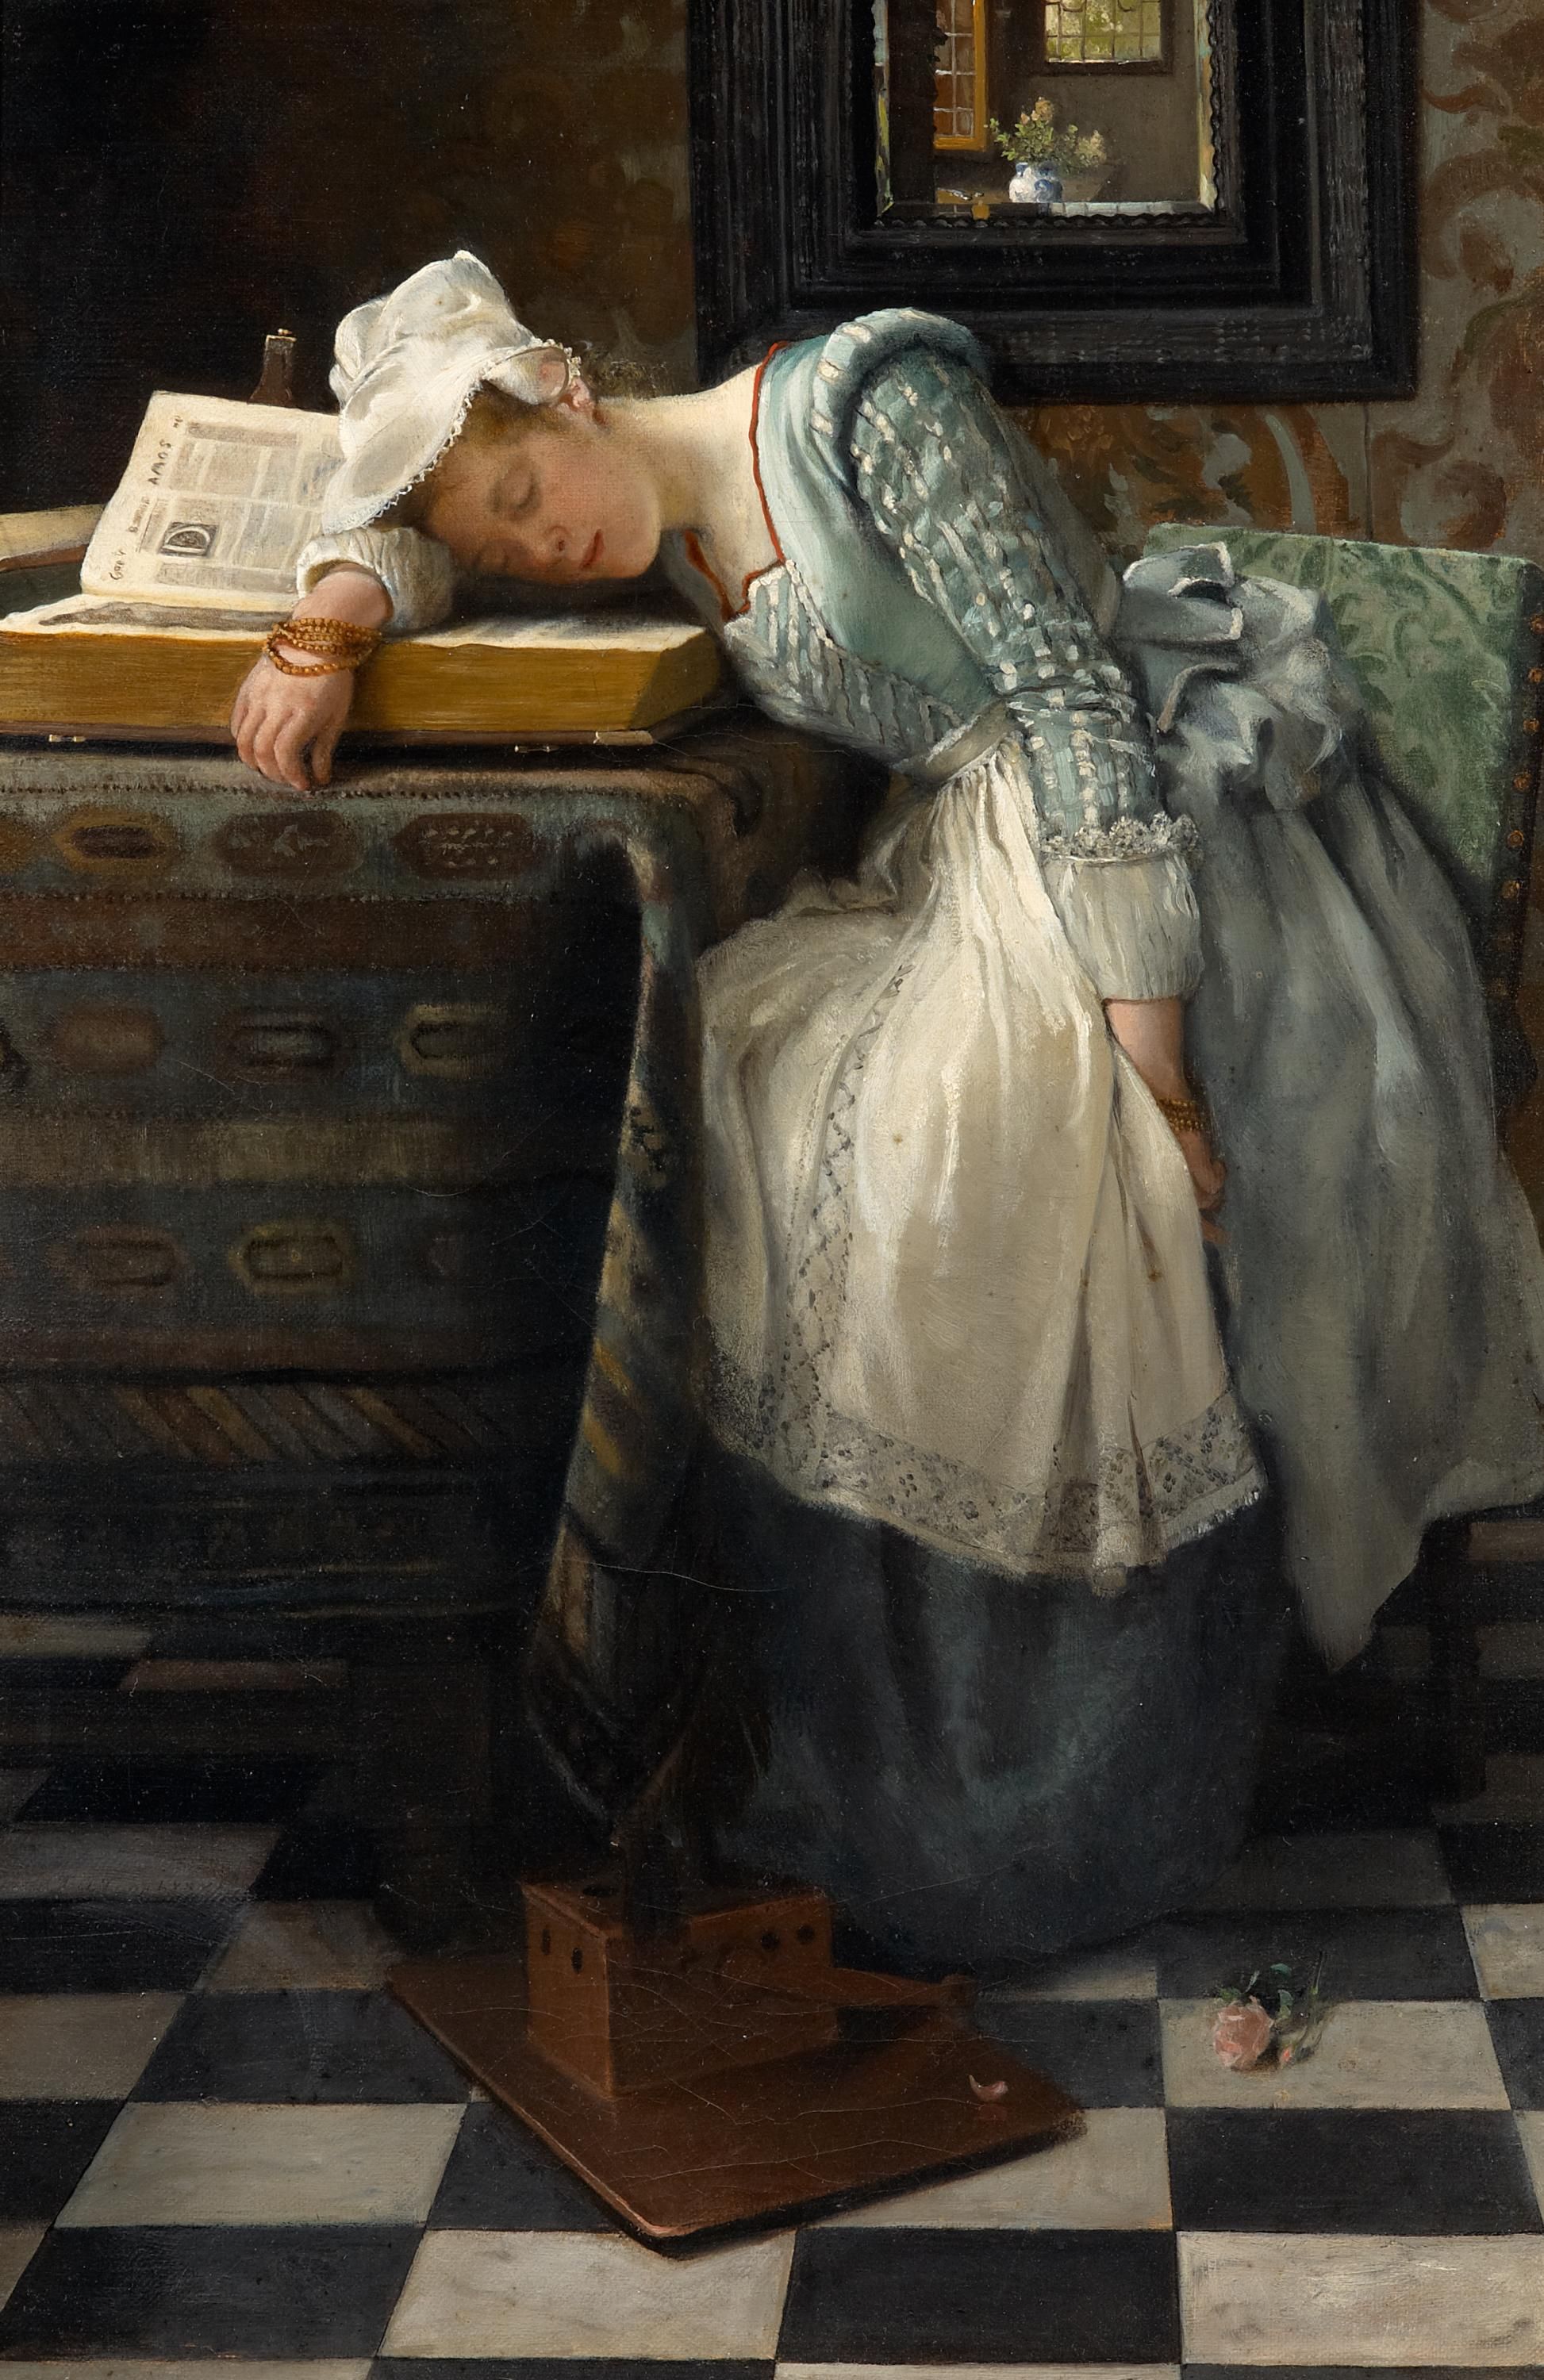 夢の世界 by Laura Theresa Alma Tadema - 1876年 - 46 x 31 cm 